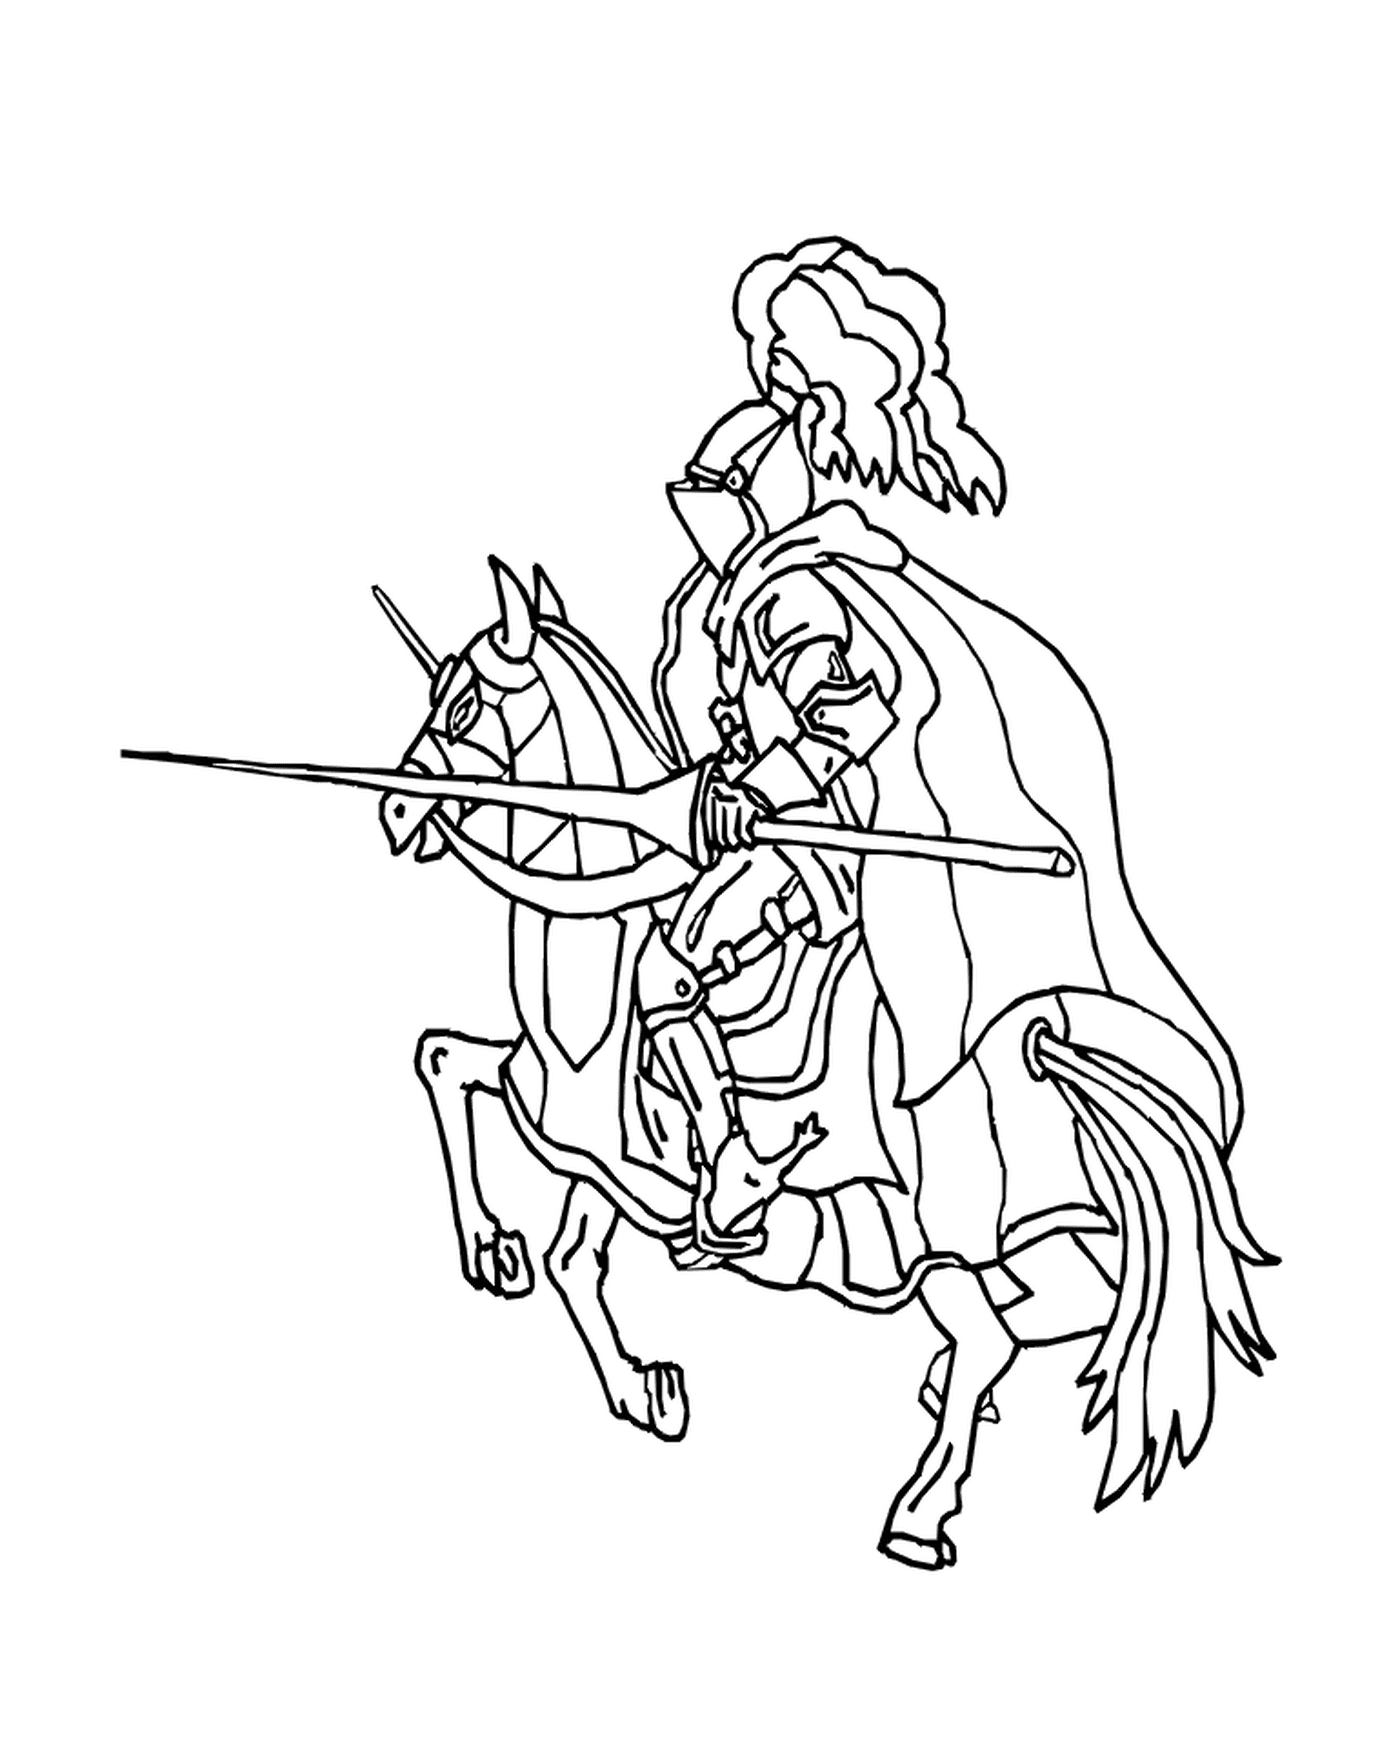   Un homme à cheval tenant une lance 